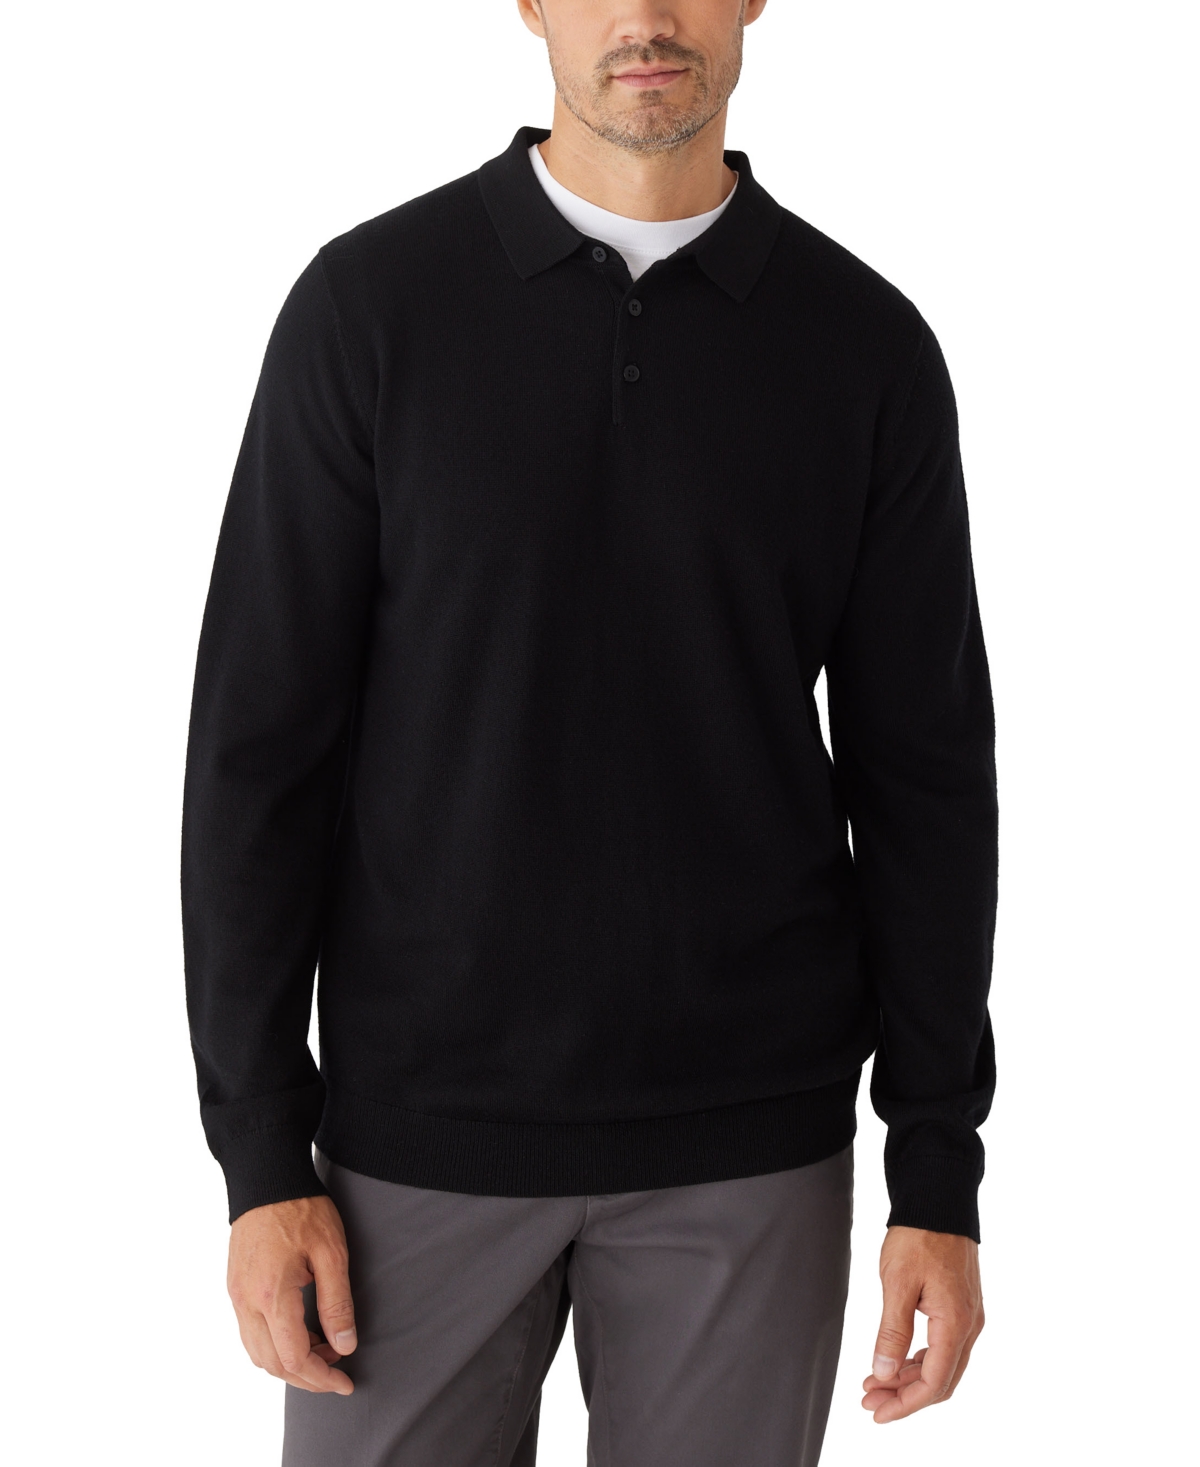 Men's Merino Wool Long-Sleeve Polo Sweater - Black